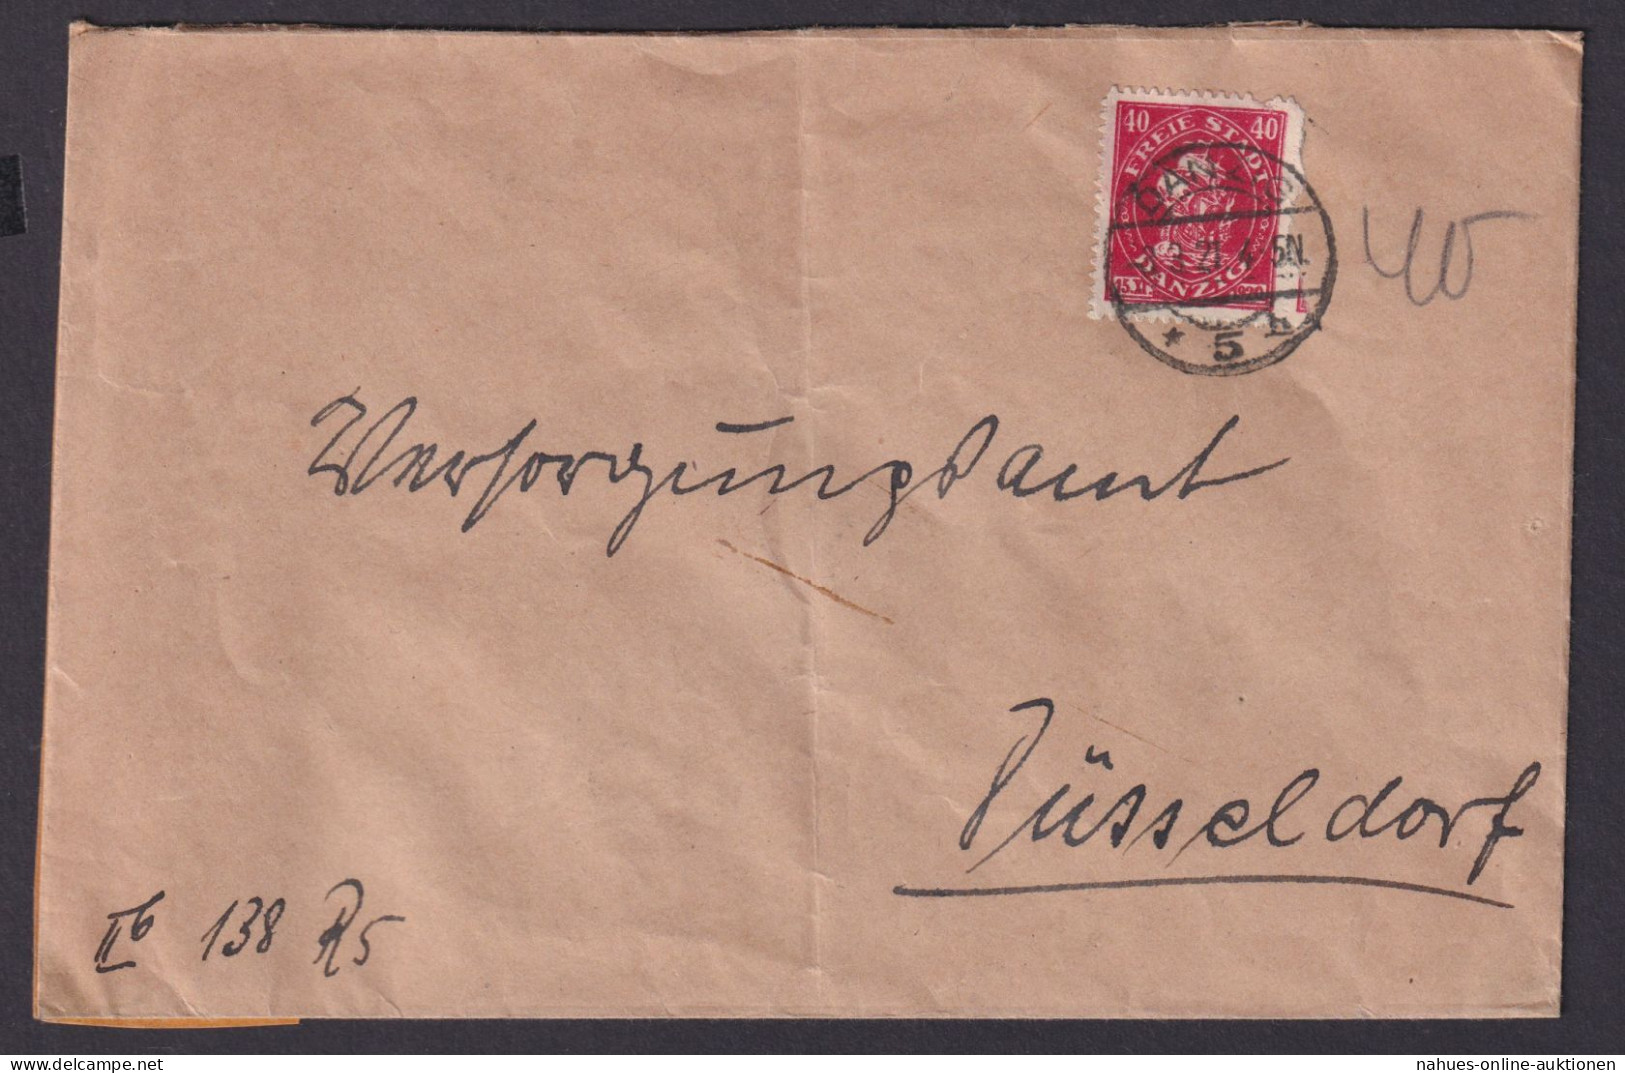 Danzig 5 Brief Versorgungsamt Brief Düsseldorf - Covers & Documents